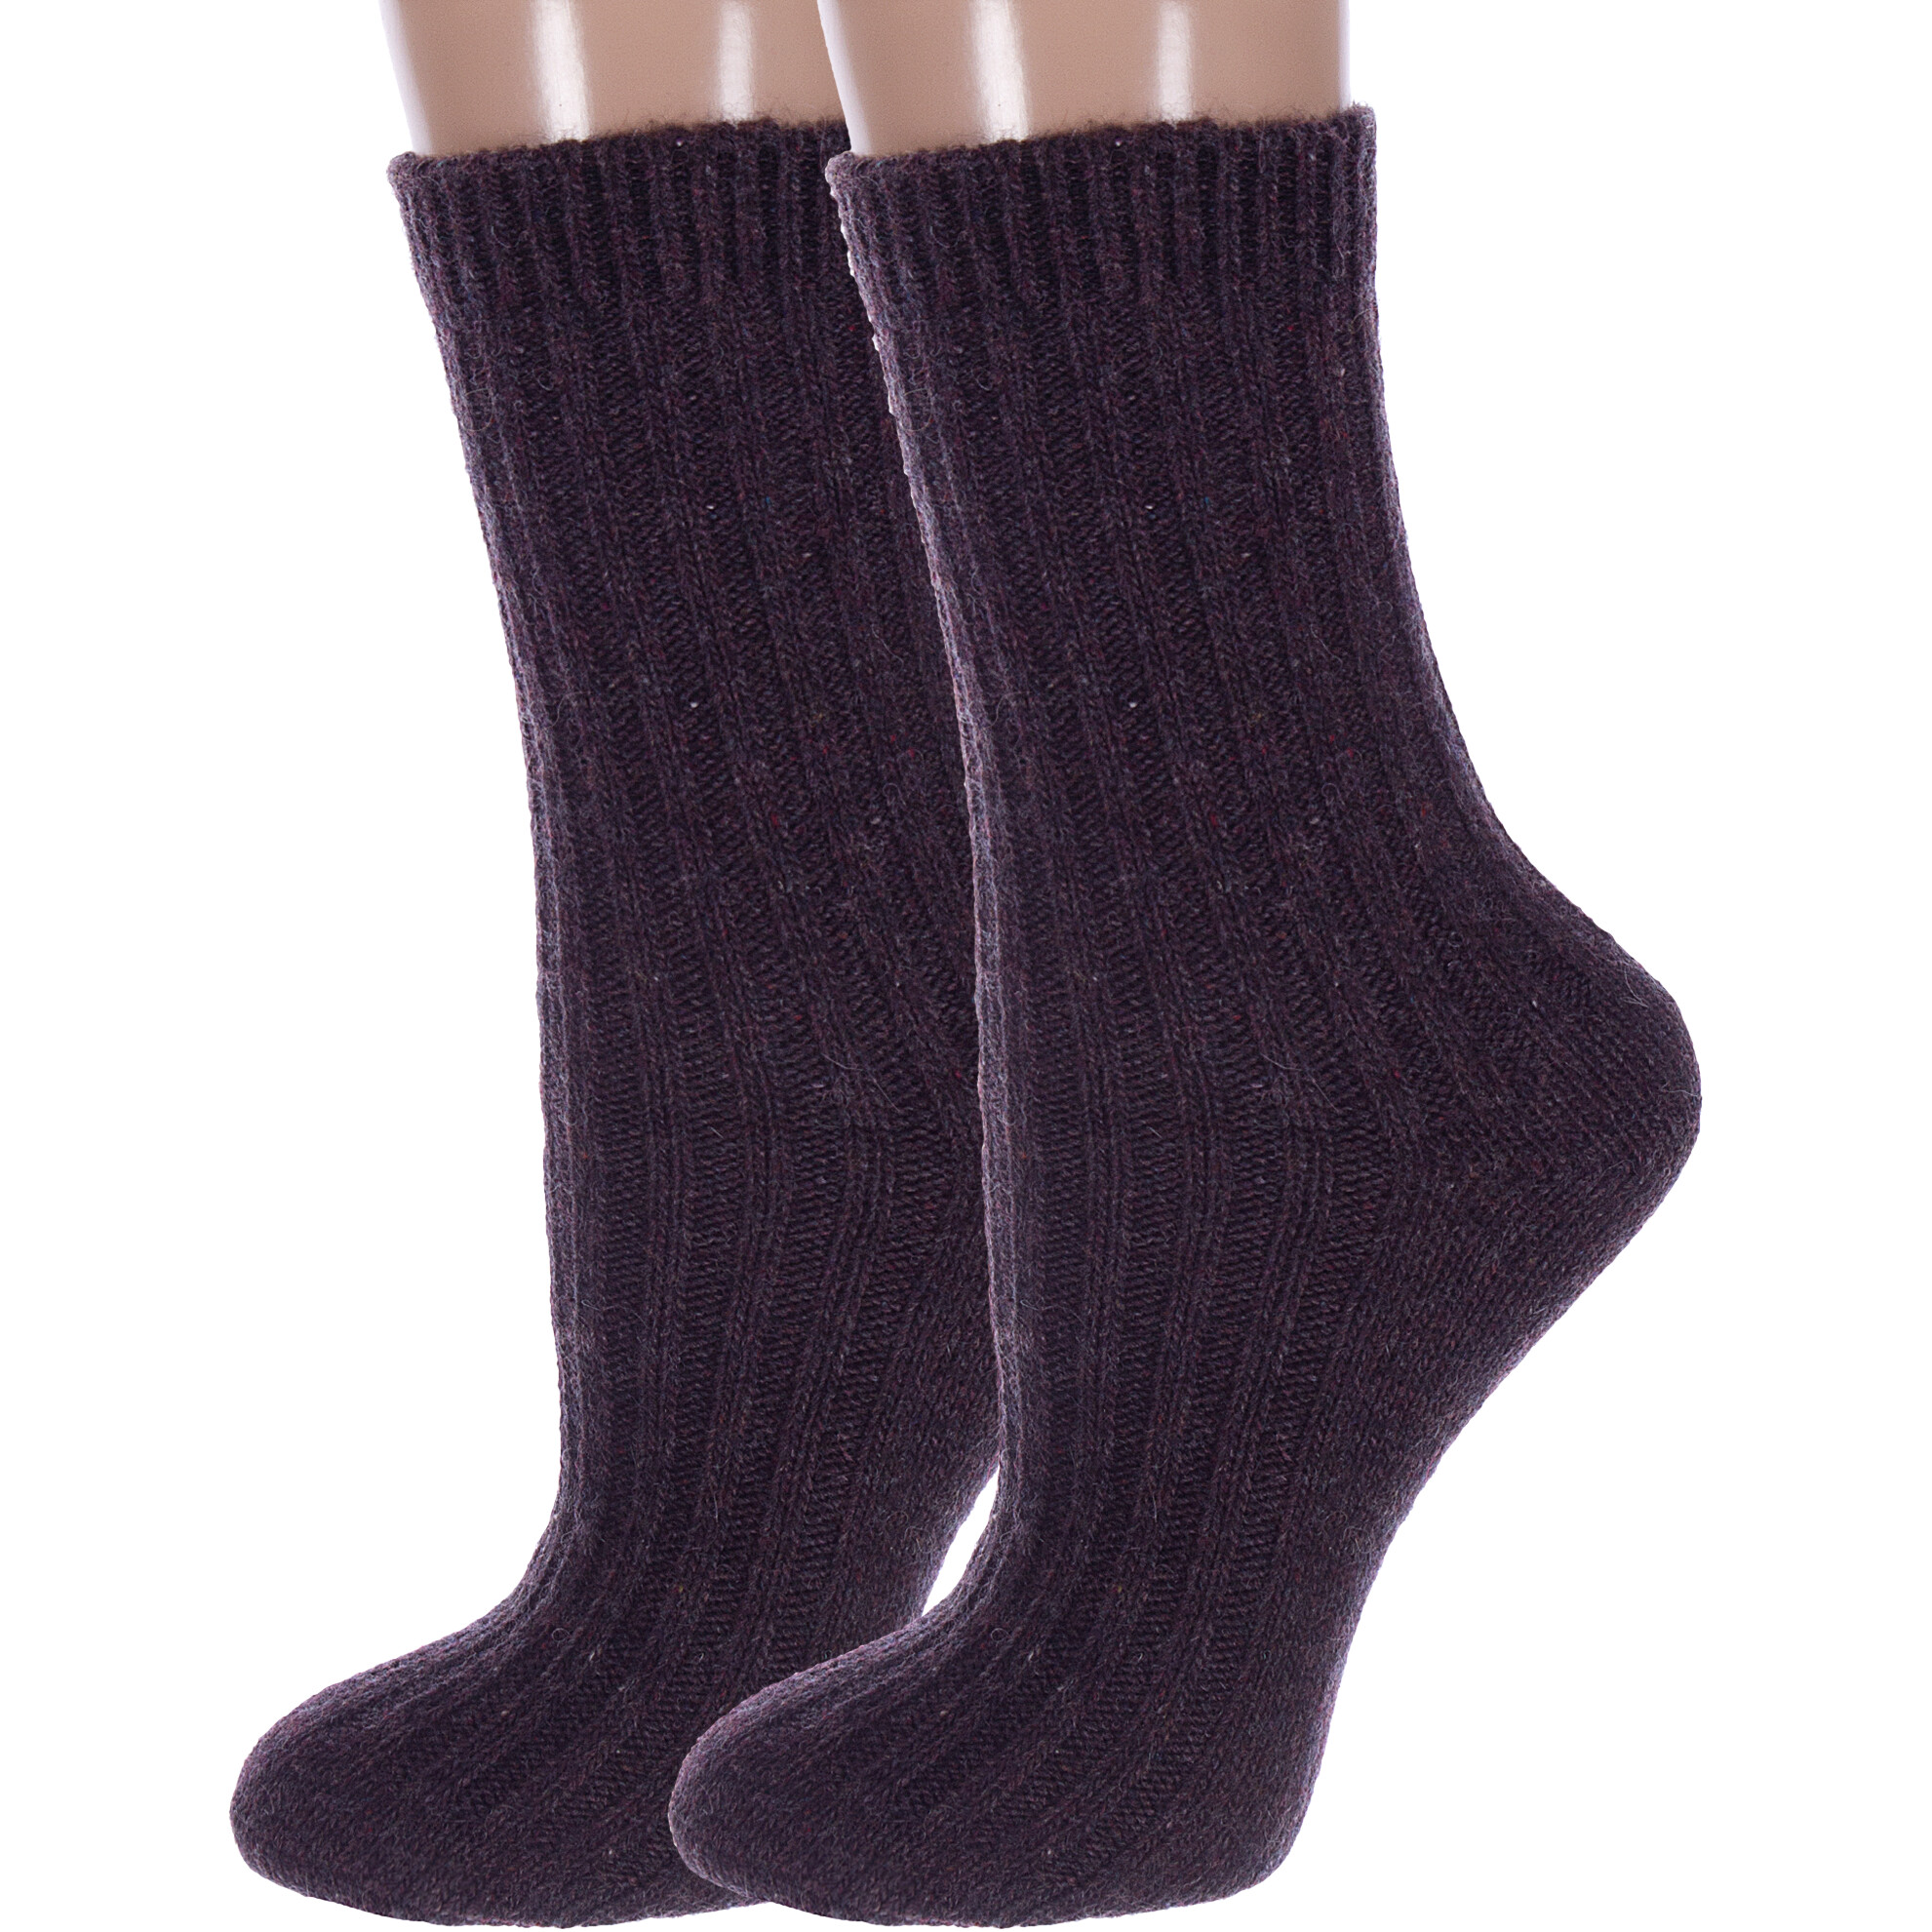 Комплект носков женских Hobby Line 2-Нжкшм6575 коричневых 36-40, 2 пары